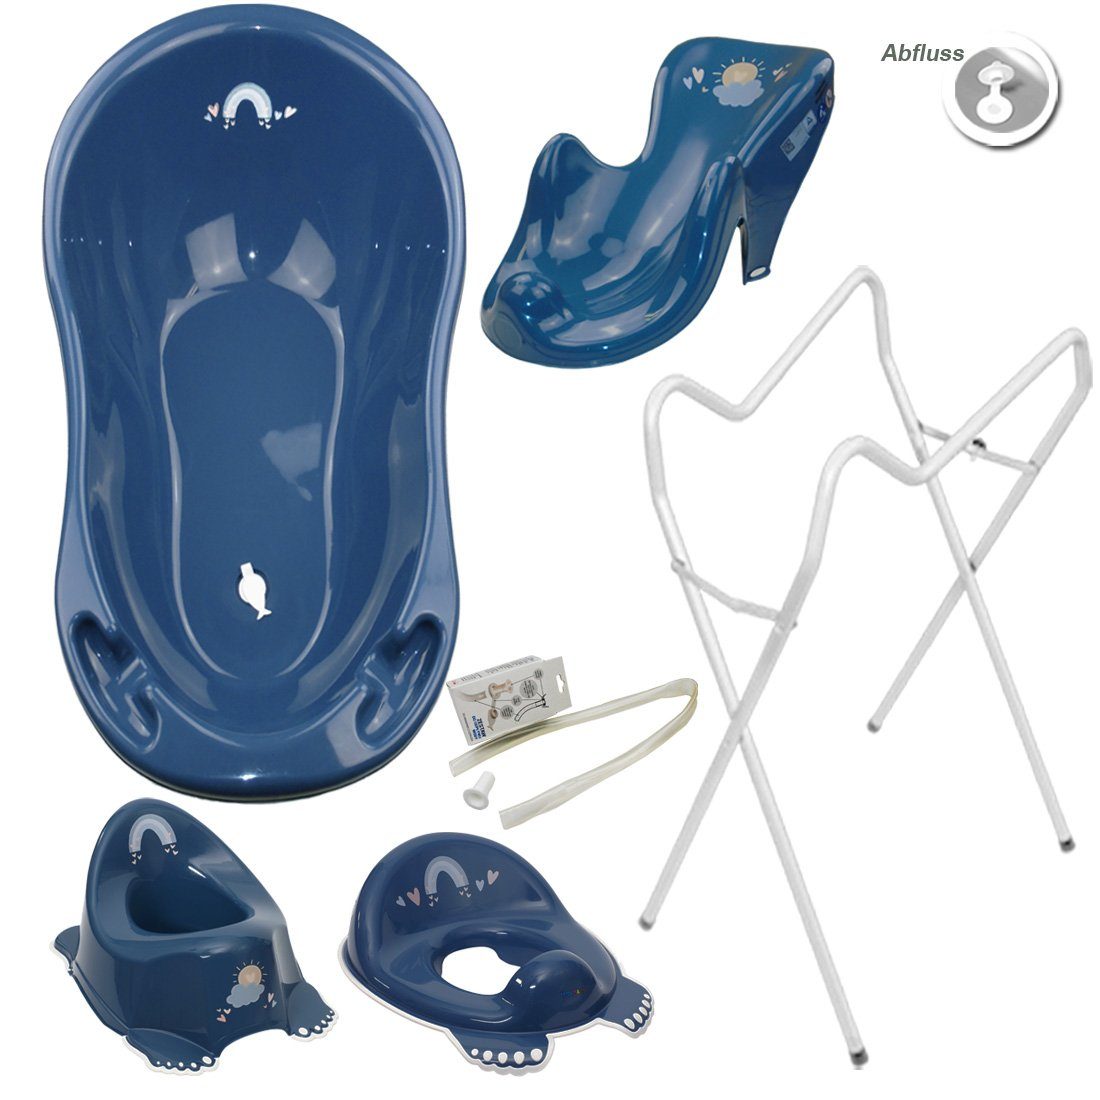 Tega-Baby Babybadewanne 5 Teile SET AB- METEO Blau + Ständer Weiß -Abflussset Babybadeset, (Made in Europe Premium.set), Wanne + Sitz + Töpfchen + WC Aufsatz + Ablauf Set+ Ständer